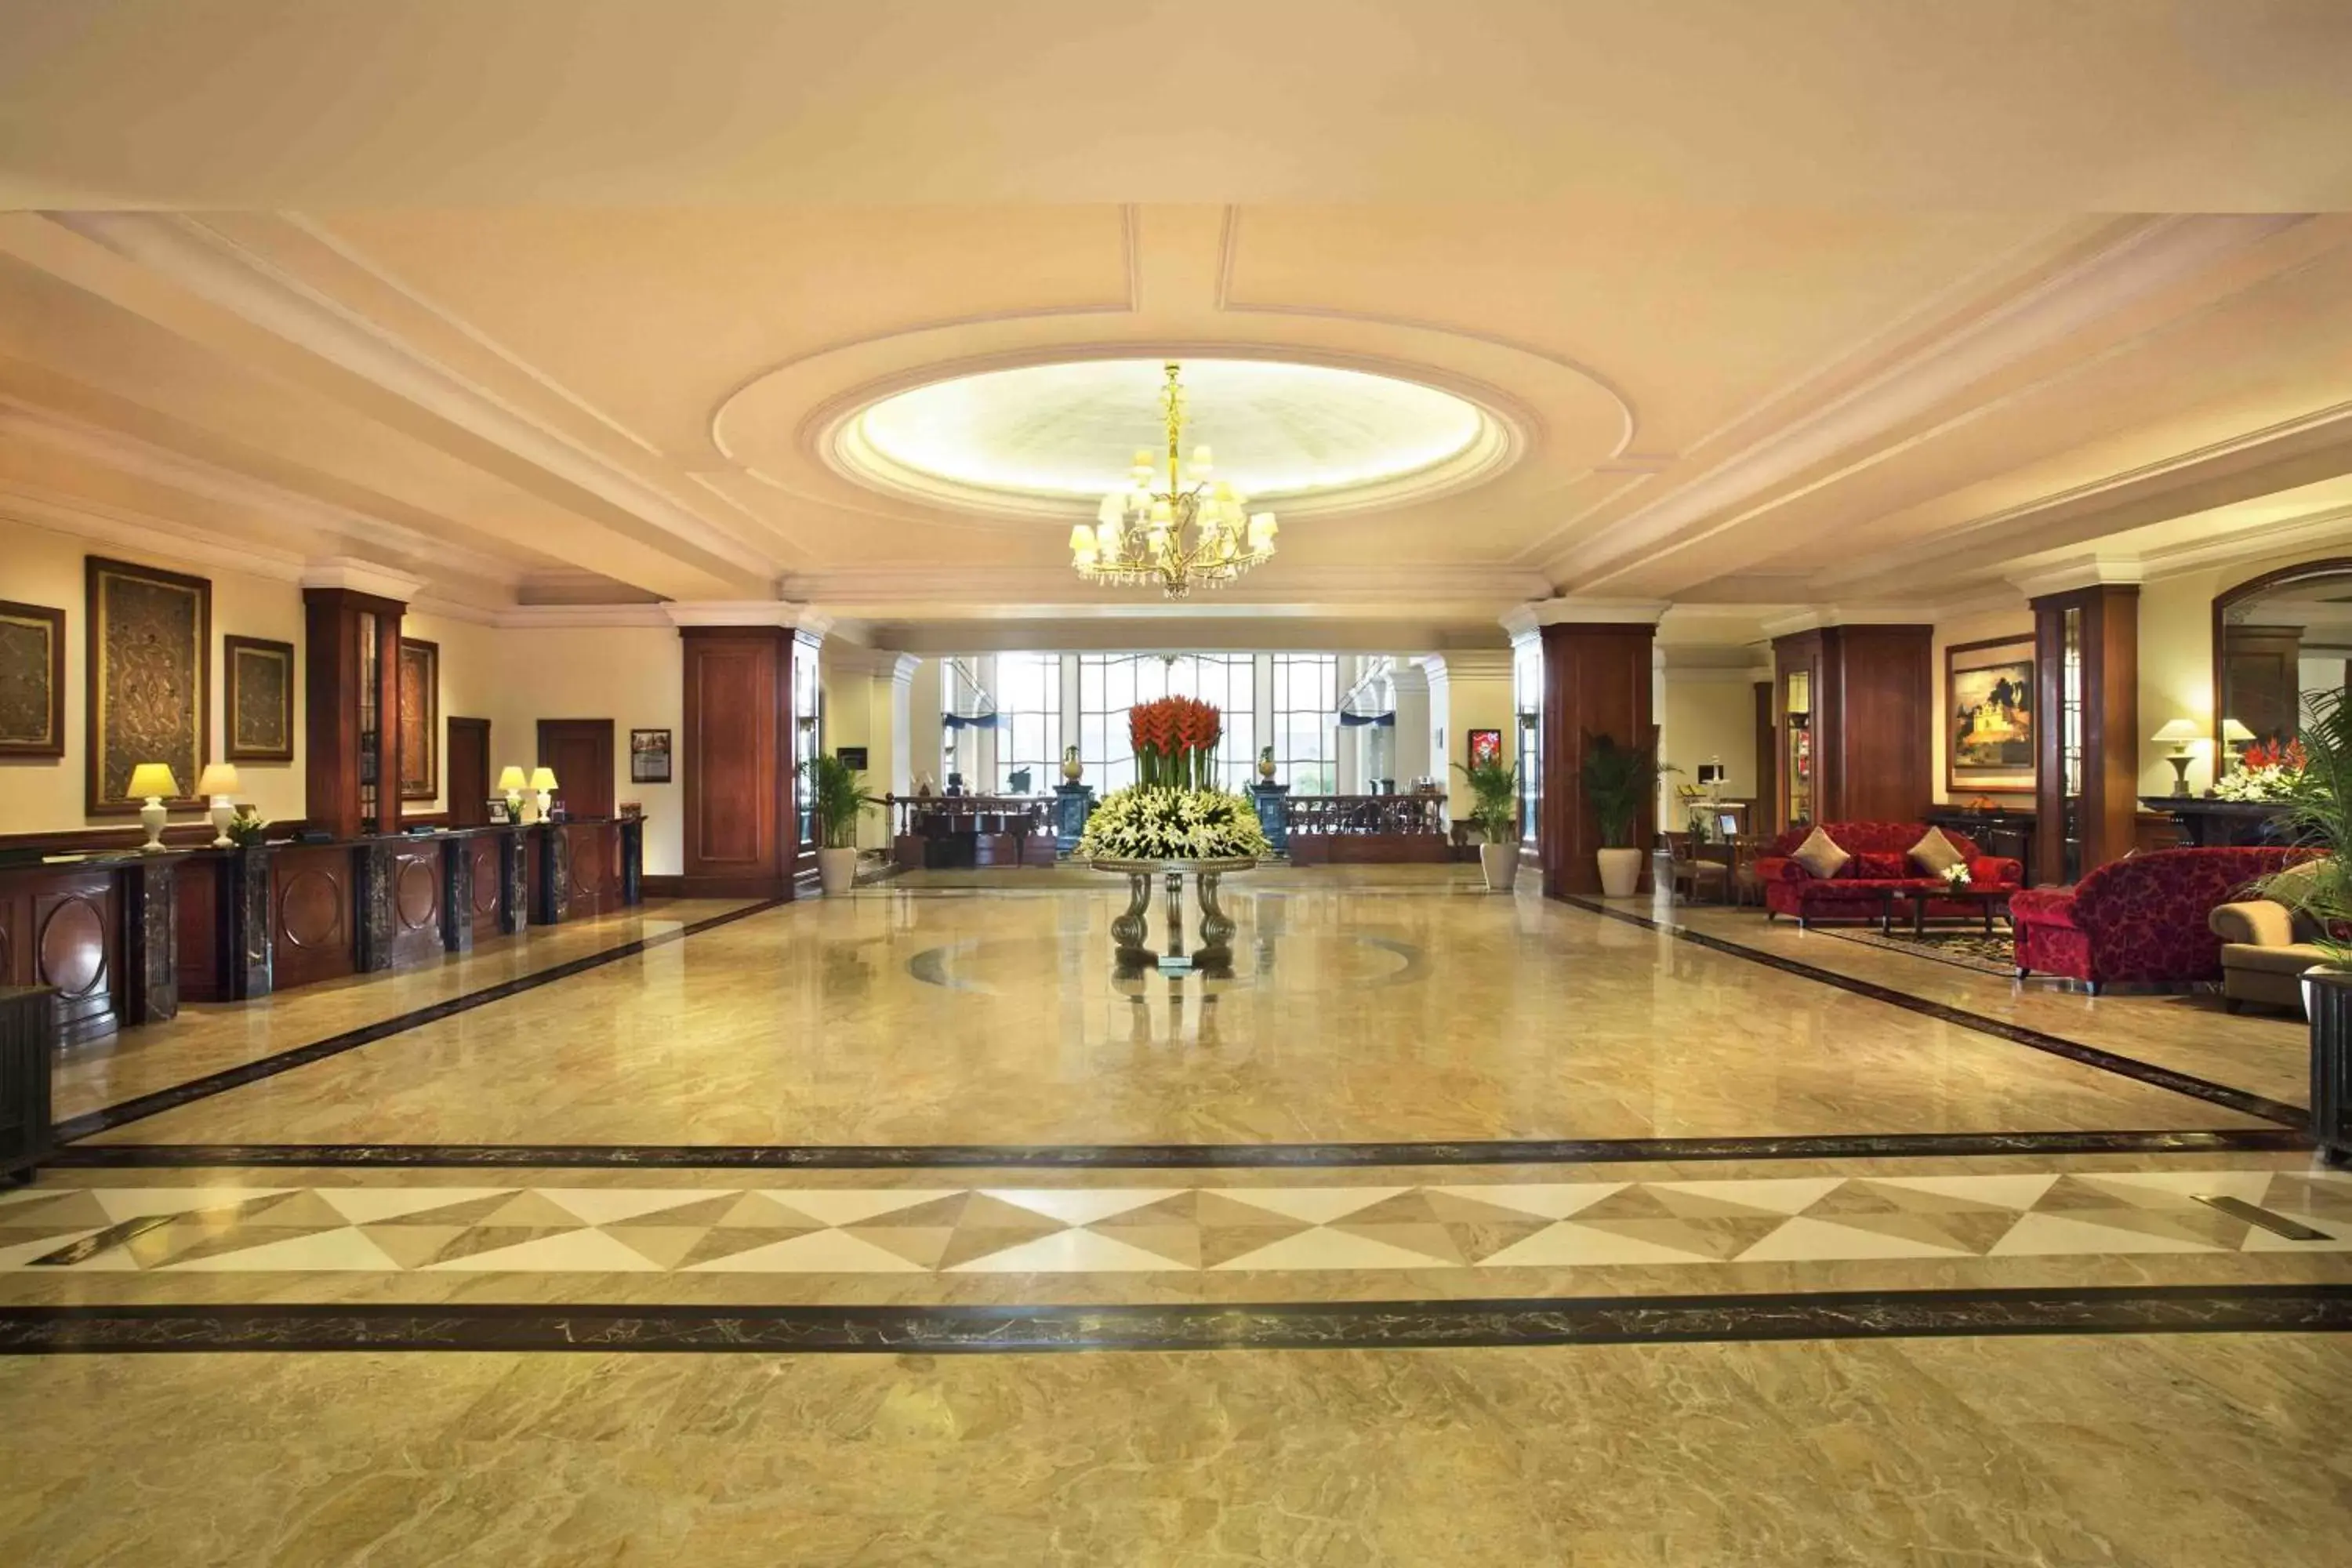 Lobby or reception, Lobby/Reception in Eros Hotel New Delhi, Nehru Place